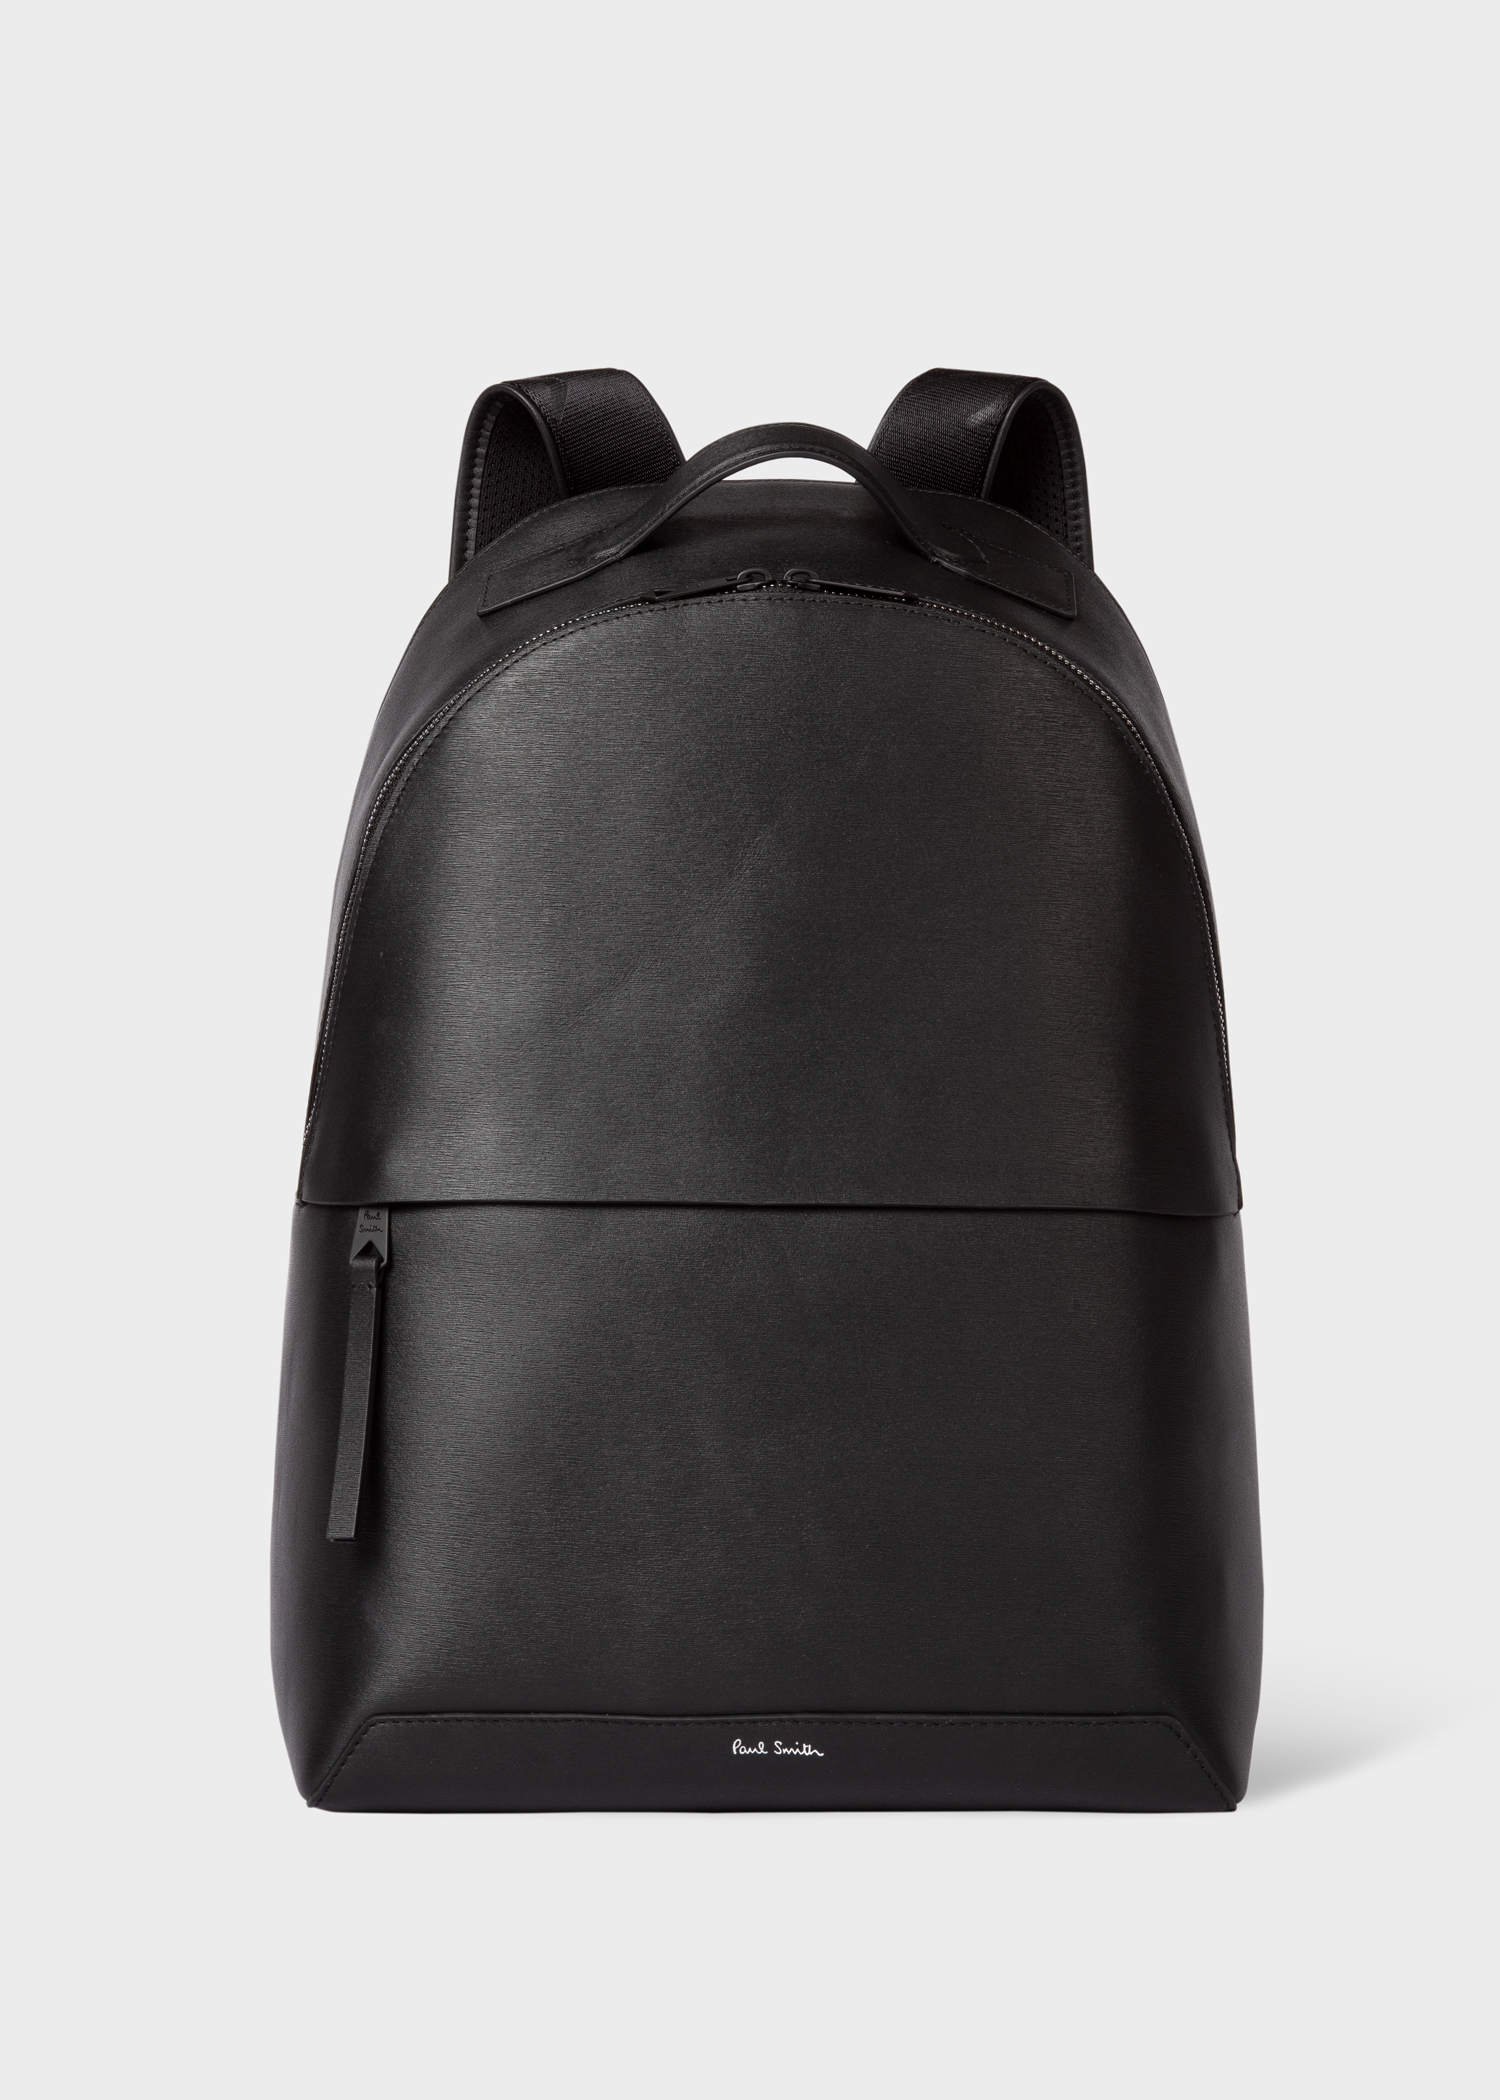 Designer Backpacks for Men | Paul Smith